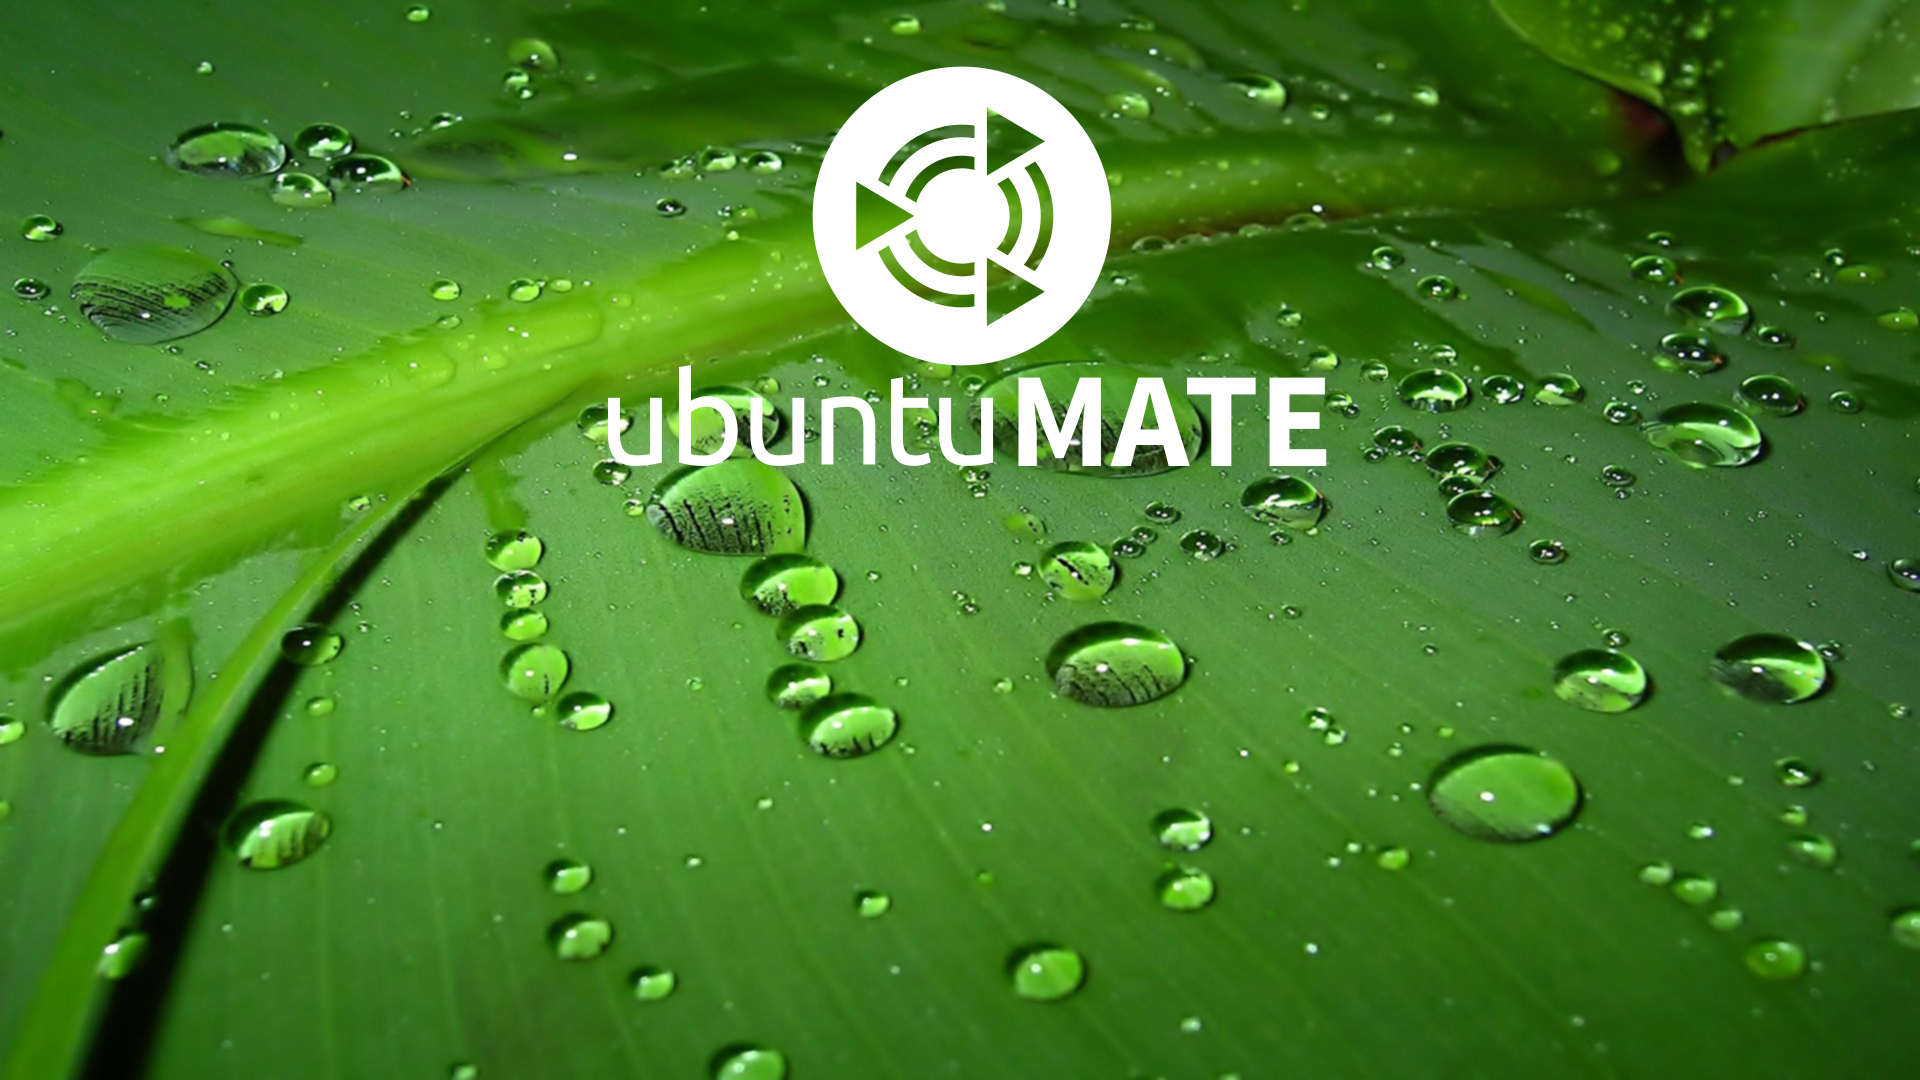 Some Ubuntumate Wallpaper Artwork Ubuntu Mate Munity